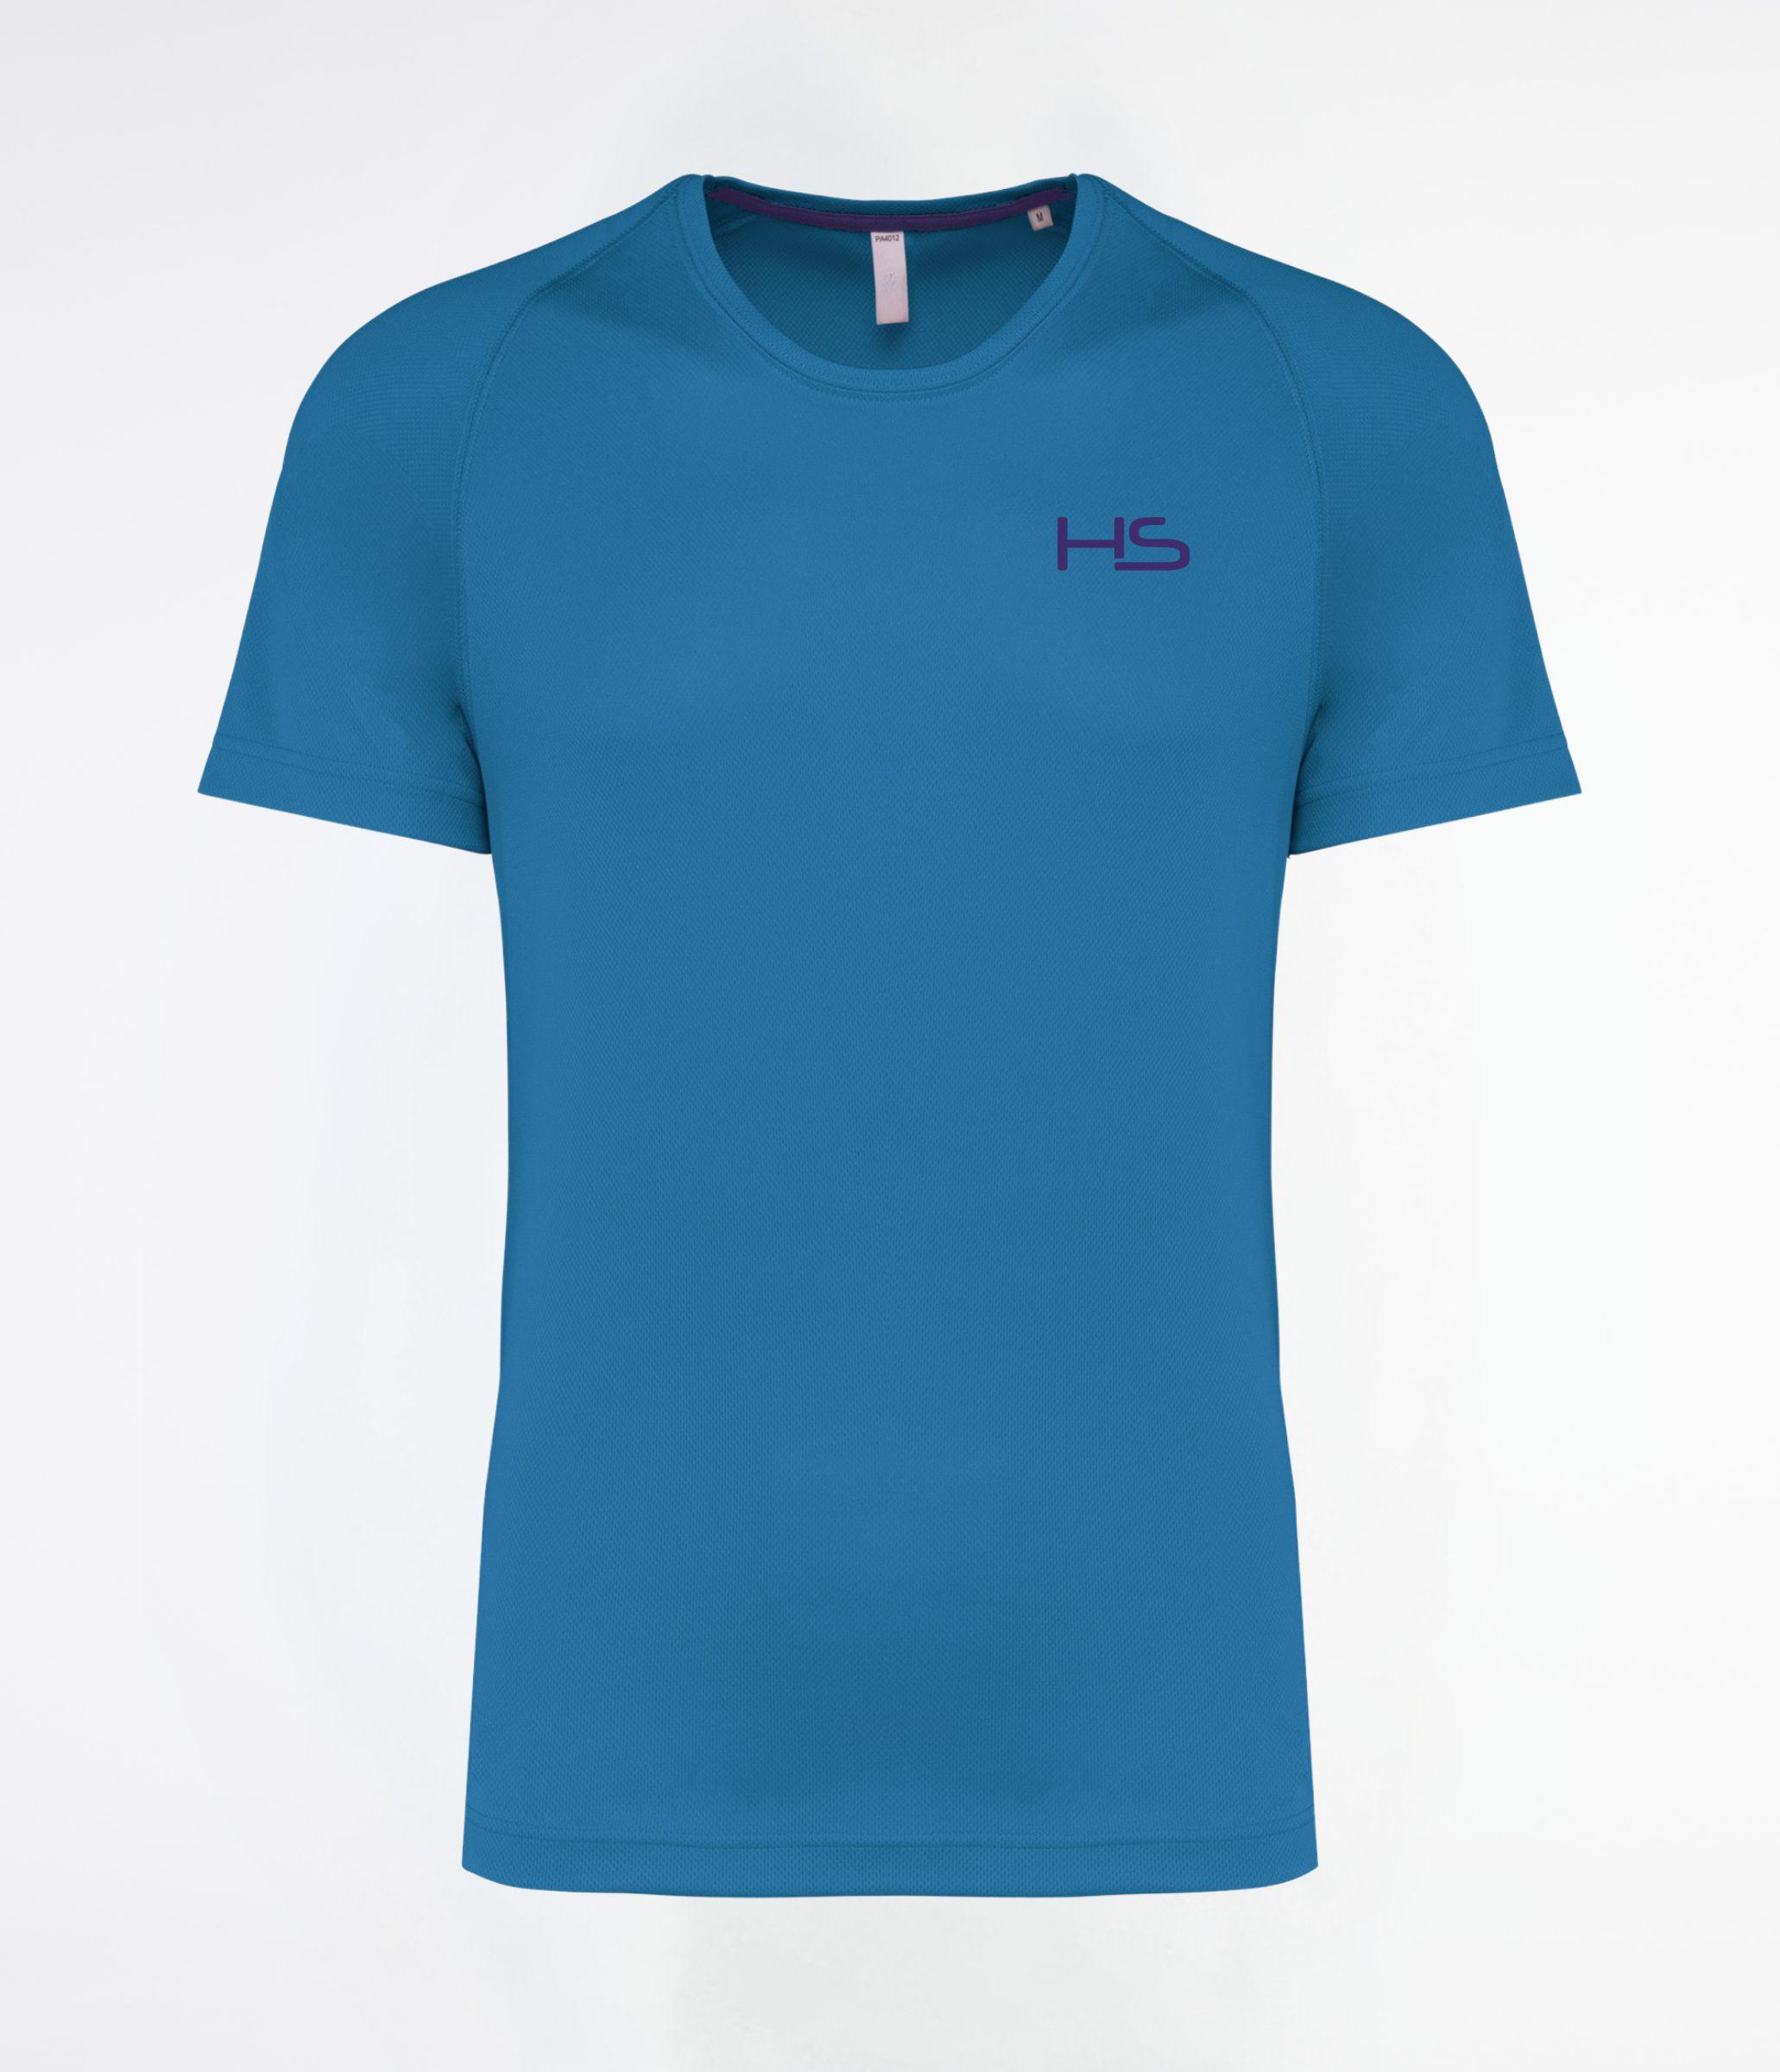 T-shirt tennis aqua blue